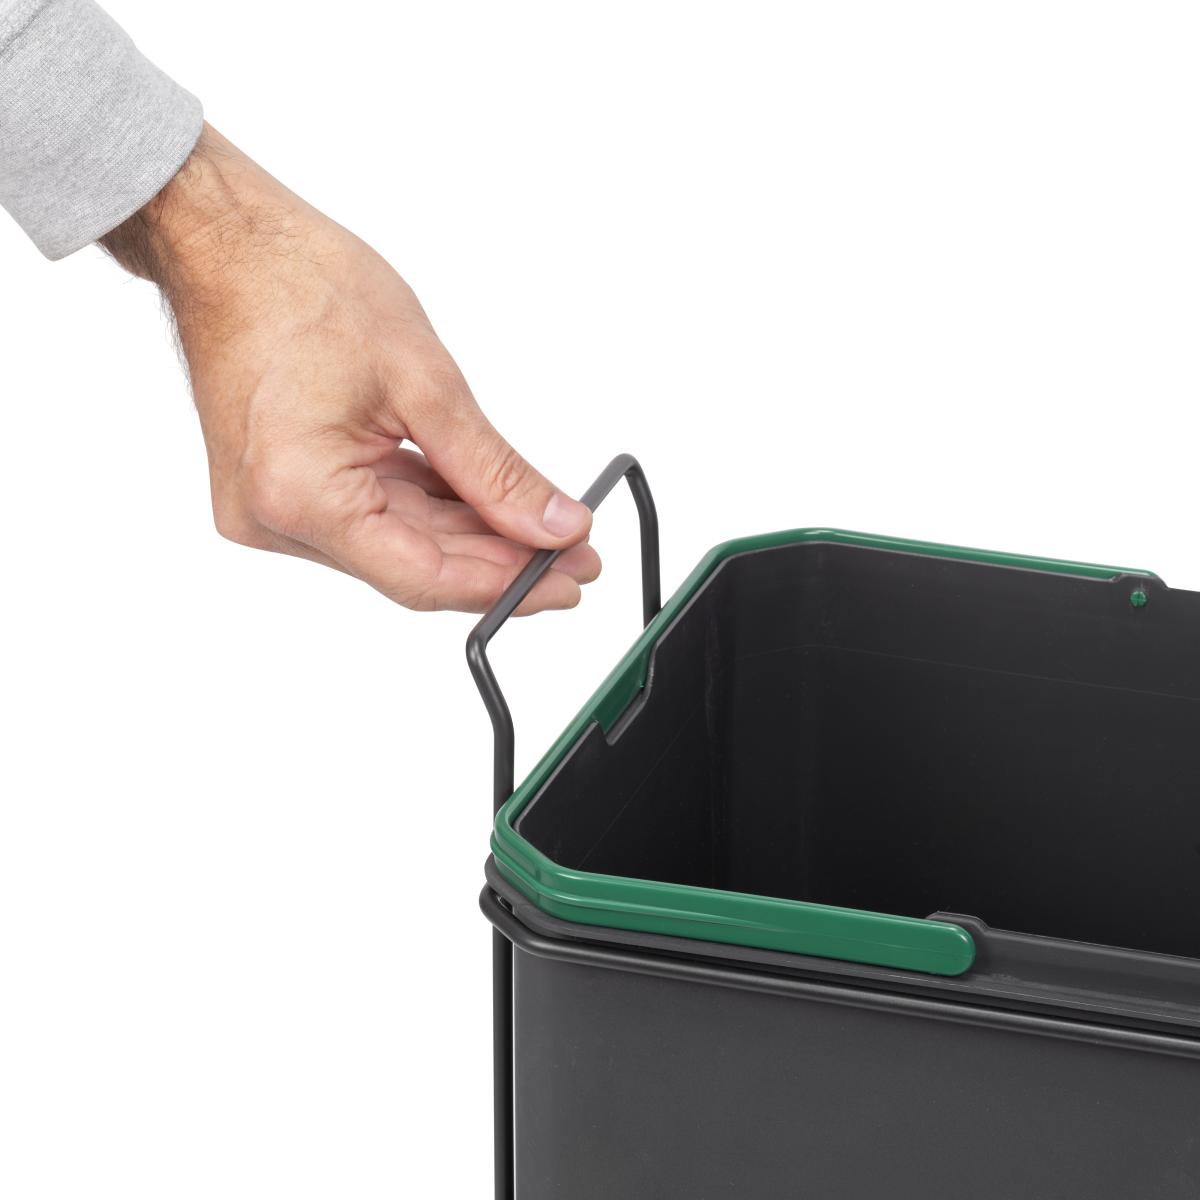 Contenedor de reciclaje Recycle de 35 L para cocina, fijación inferior y extracción manual